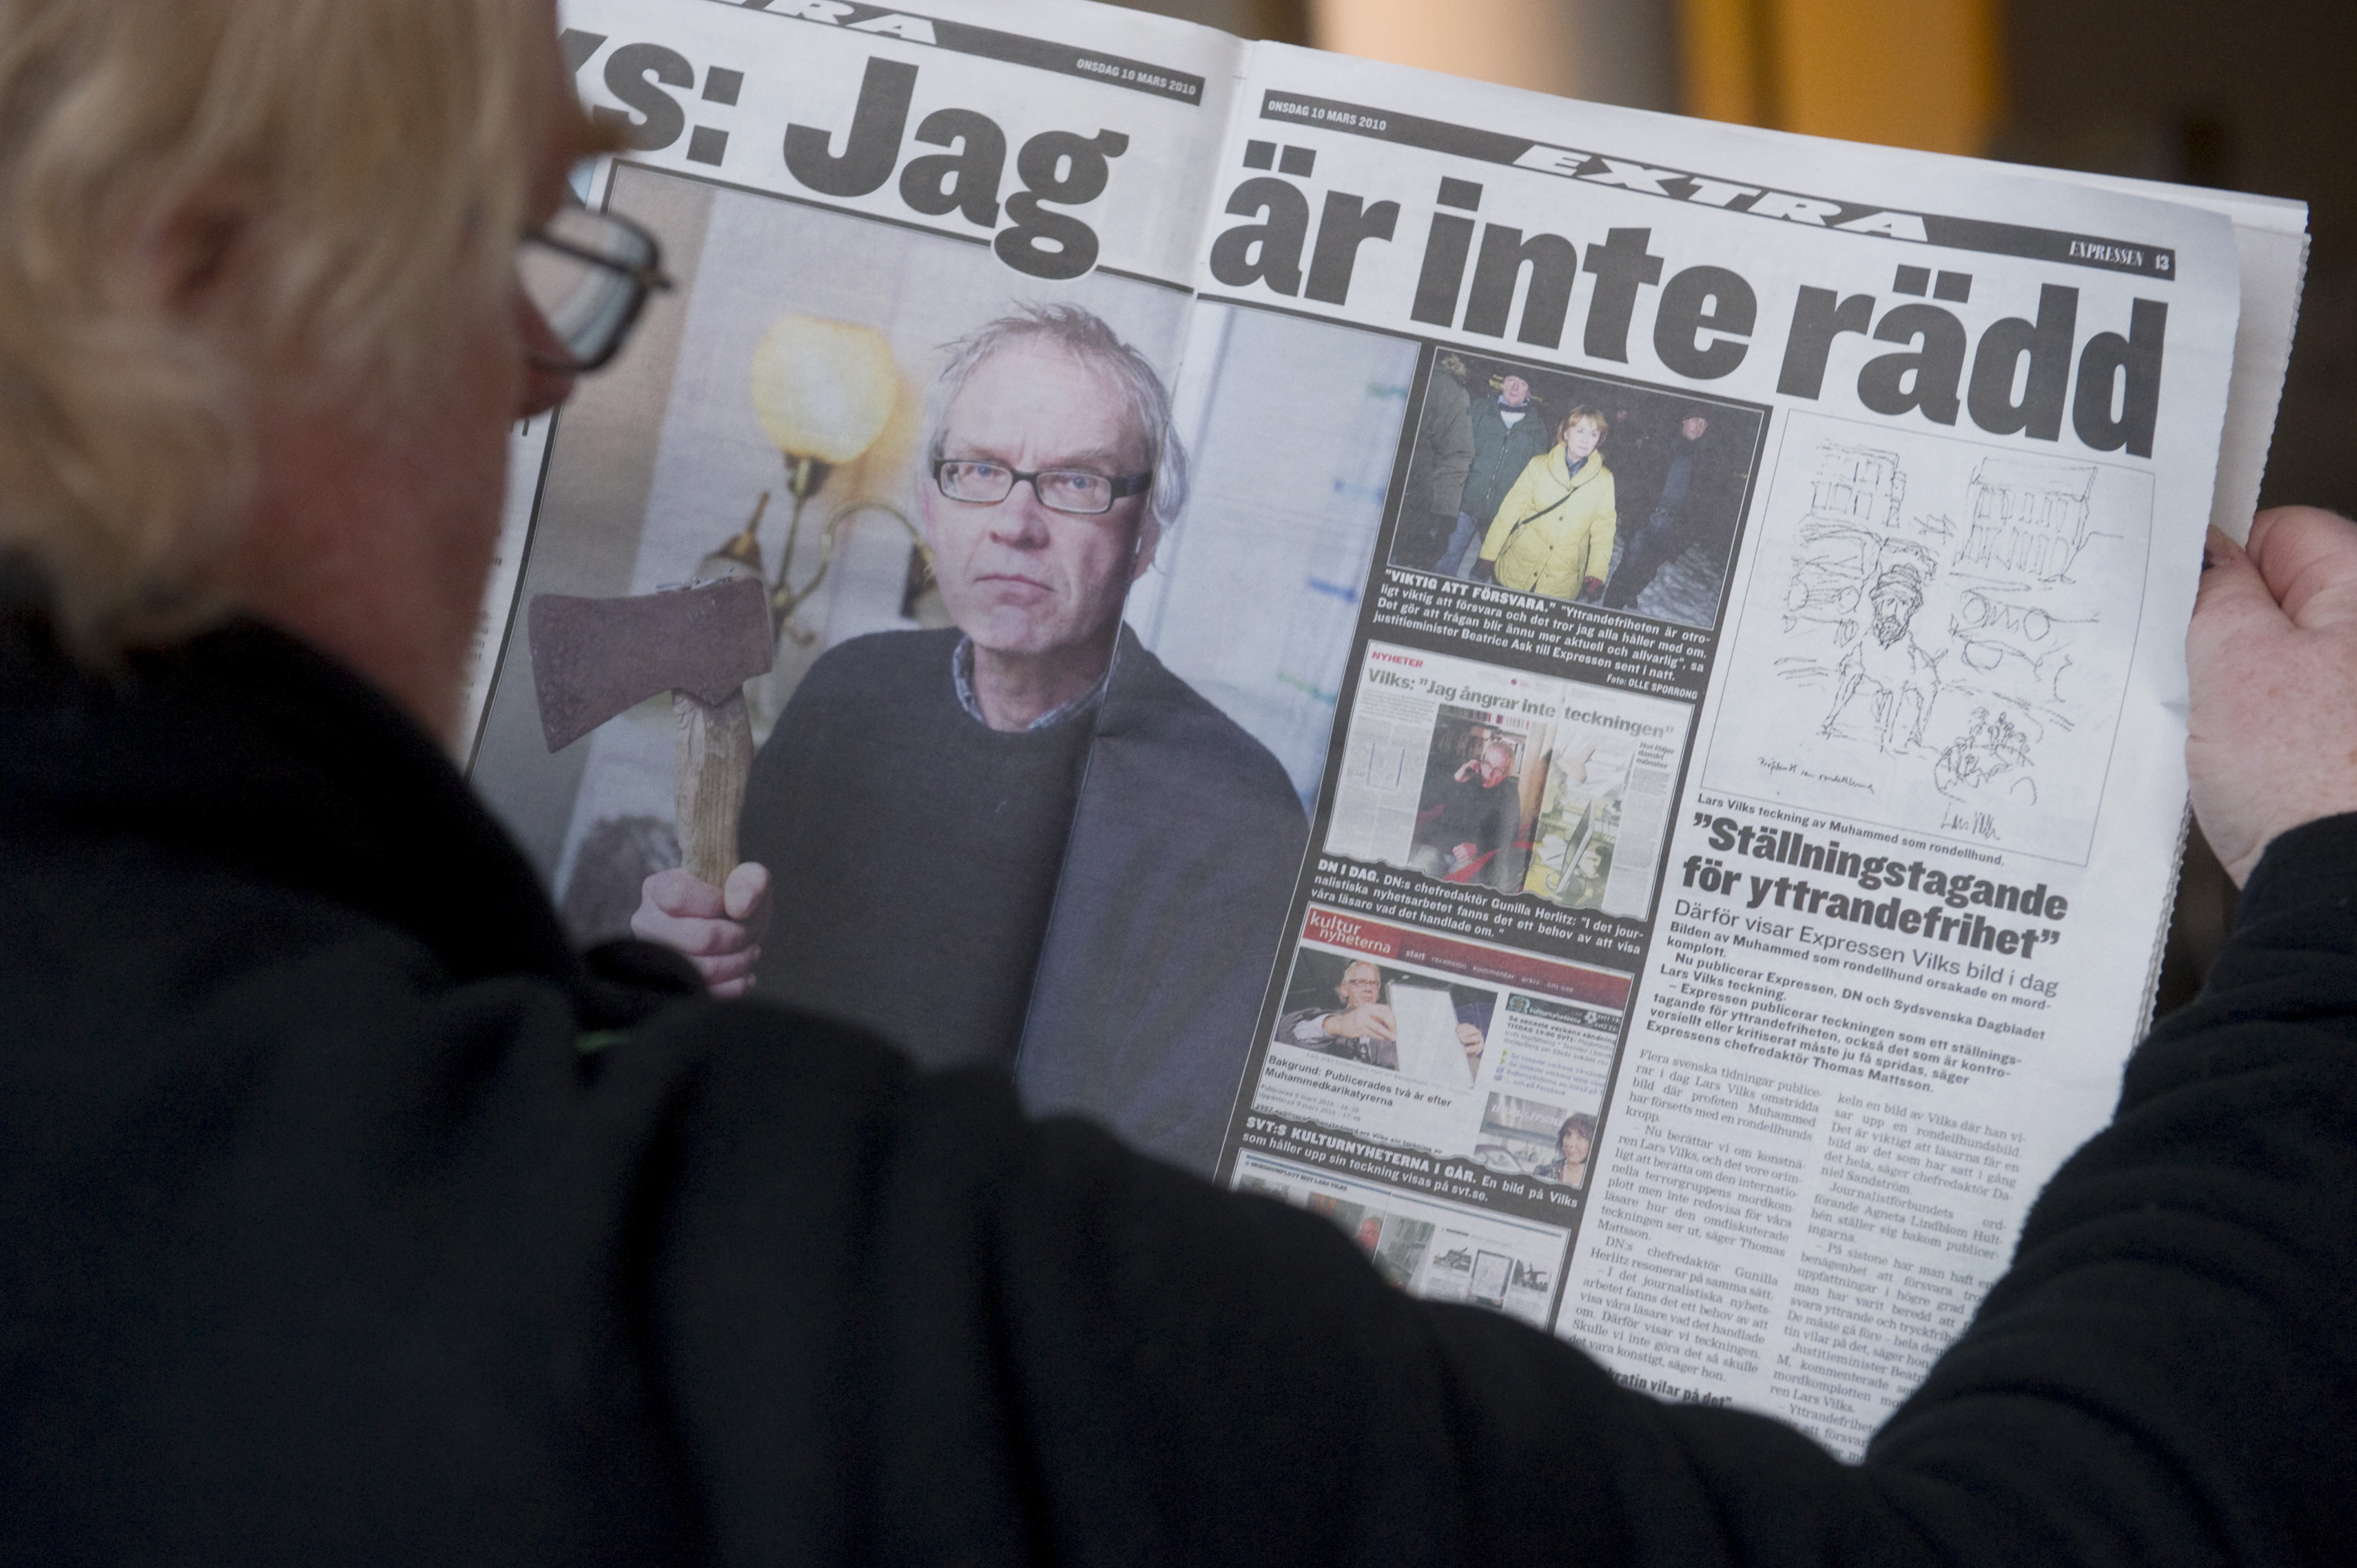 15/7/2010. En 19-åring och en 21-åring försöker döda Lars Vilks i maj genom att sätta eld på hans hus. Men de misslyckas, brännskadas och glömmer övertygande bevis på brottsplatsen. Den 15 juli döms de till tre respektive två års fängelse i Helsingborgs t